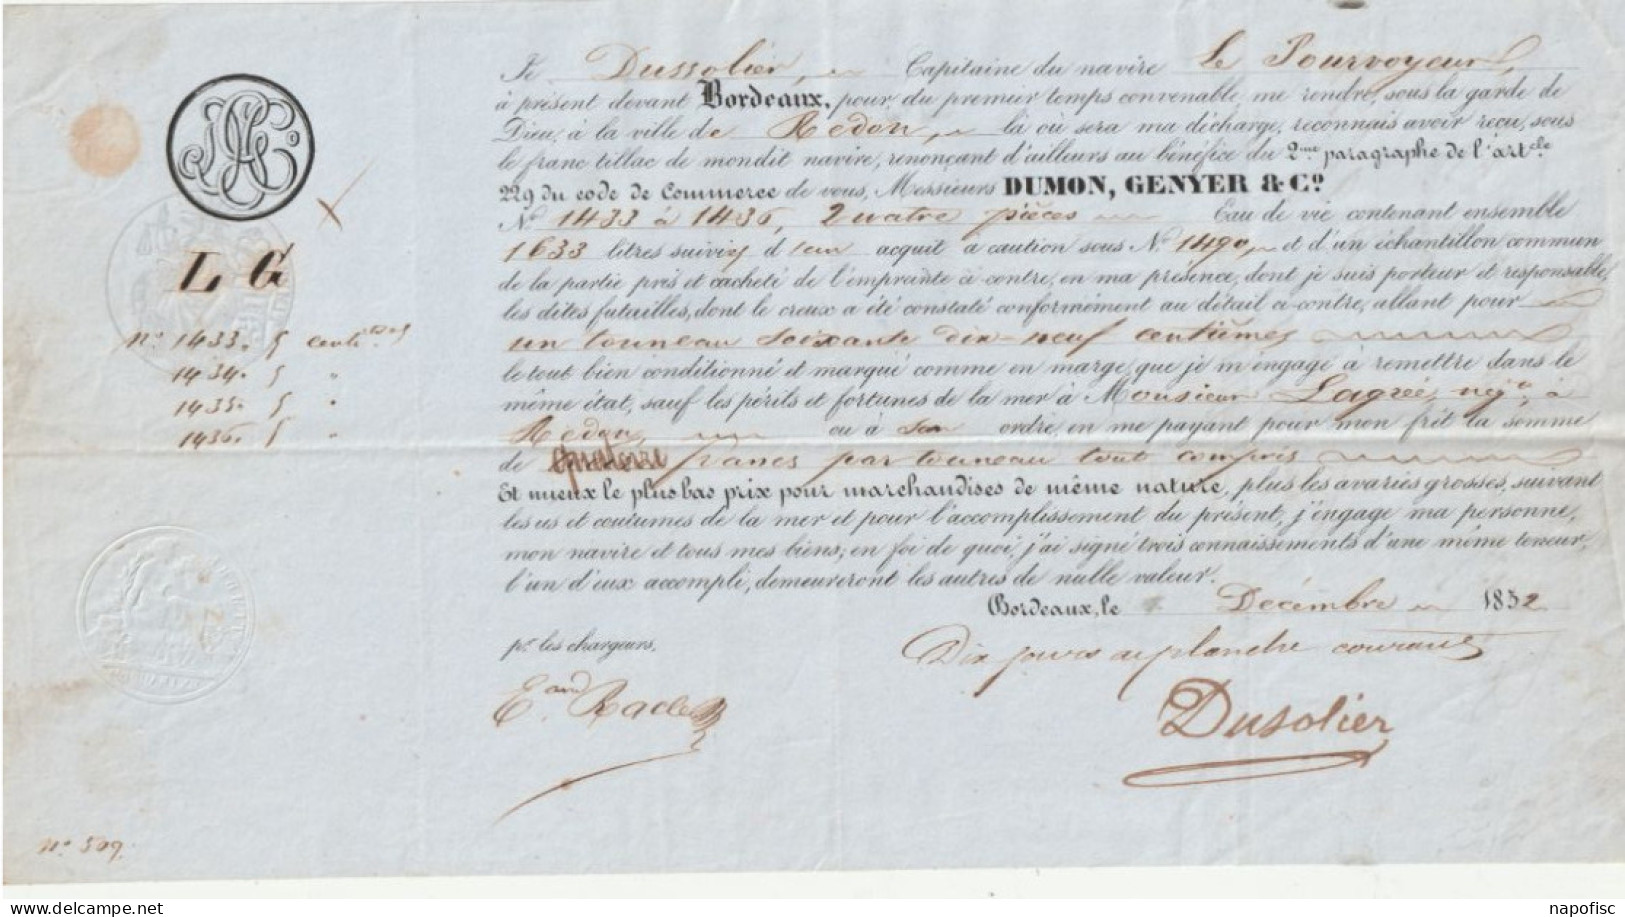 33-Connaissement Dumon, Genyer & Cie....Dussolier..Capitaine Navire Le Pourvoyeur...Bordeaux (Gironde) 1852 - Trasporti